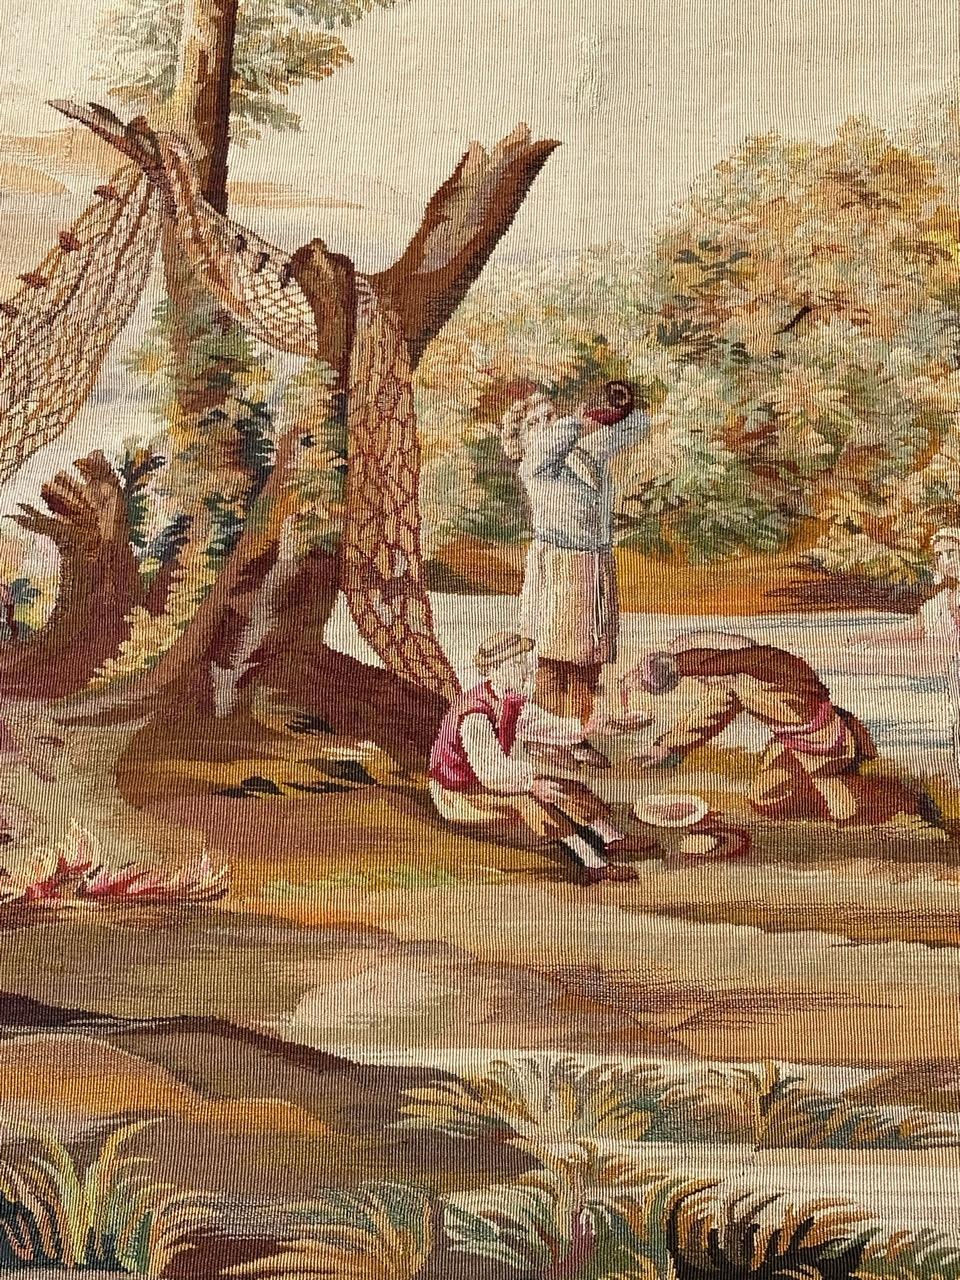 Très belle et fine tapisserie d'Aubusson avec un joli dessin représentant des personnes pique-niquant au bord de la rivière, et avec de belles couleurs, entièrement et finement tissée à la main avec de la laine et de la soie, dans les ateliers